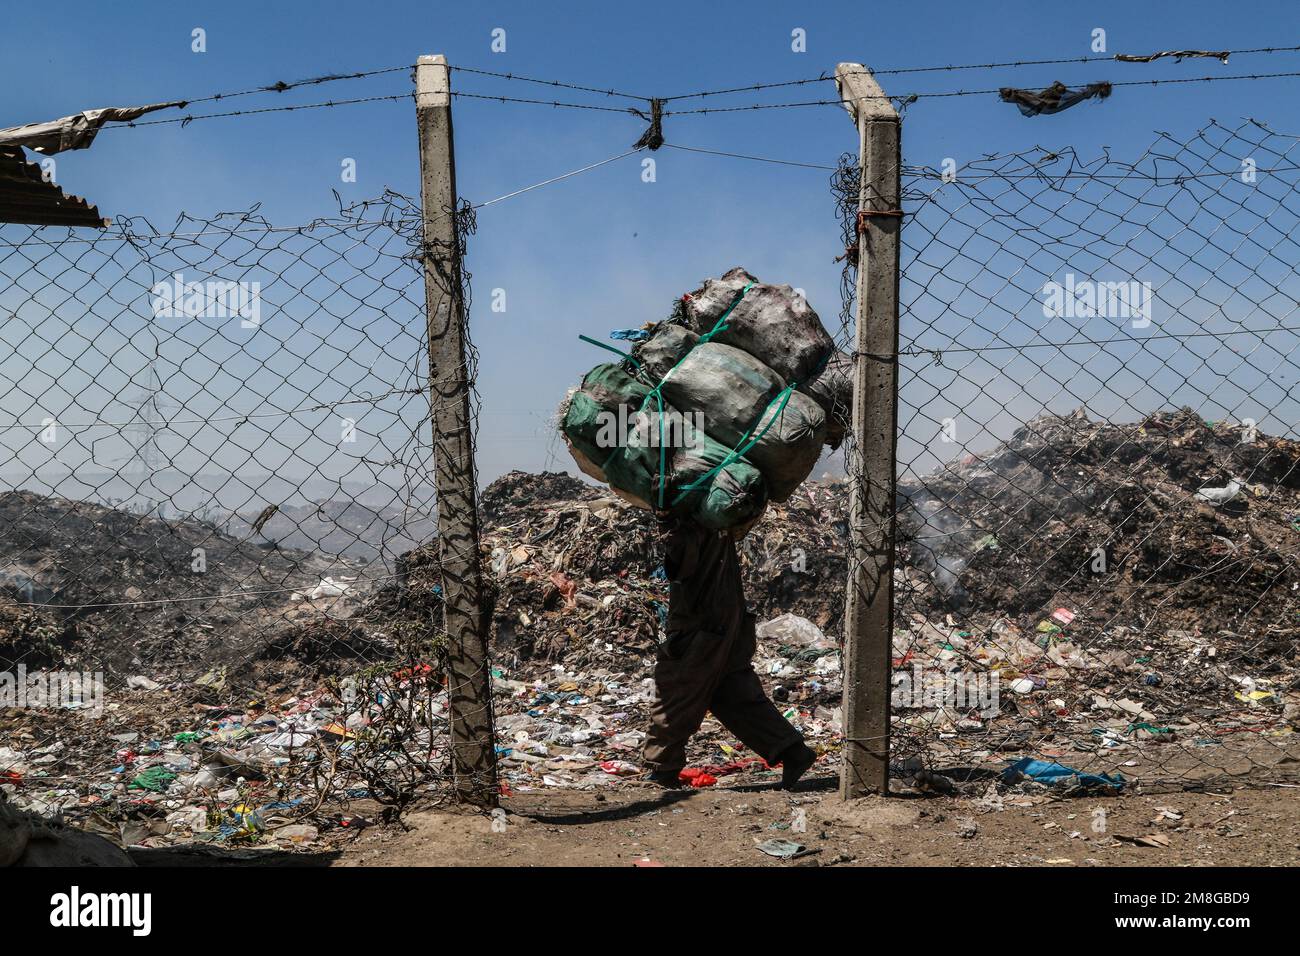 Ein Abfallsammler transportiert Müllsäcke mit Abfall zum Recycling neben dem brennenden Müll auf dem Hauptdepot von Nakuru. Da Abfälle selten getrennt und stark mit allen Arten von Abfall vermischt werden, kann das Verbrennen potenziell giftige Dämpfe erzeugen, die ein Problem für die öffentliche Gesundheit darstellen und auch zum Klimawandel beitragen können. Gemeinden, die in der Nähe von Mülldeponien arbeiten und leben, wo Müll offen verbrannt wird, sind dem Risiko von Atemwegserkrankungen und Krebs ausgesetzt. Frauen, die diesen Dämpfen ausgesetzt sind, können unter reproduktiven Gesundheitsproblemen leiden. (Foto: James Wakibia/SOPA Images/Sipa USA) Stockfoto